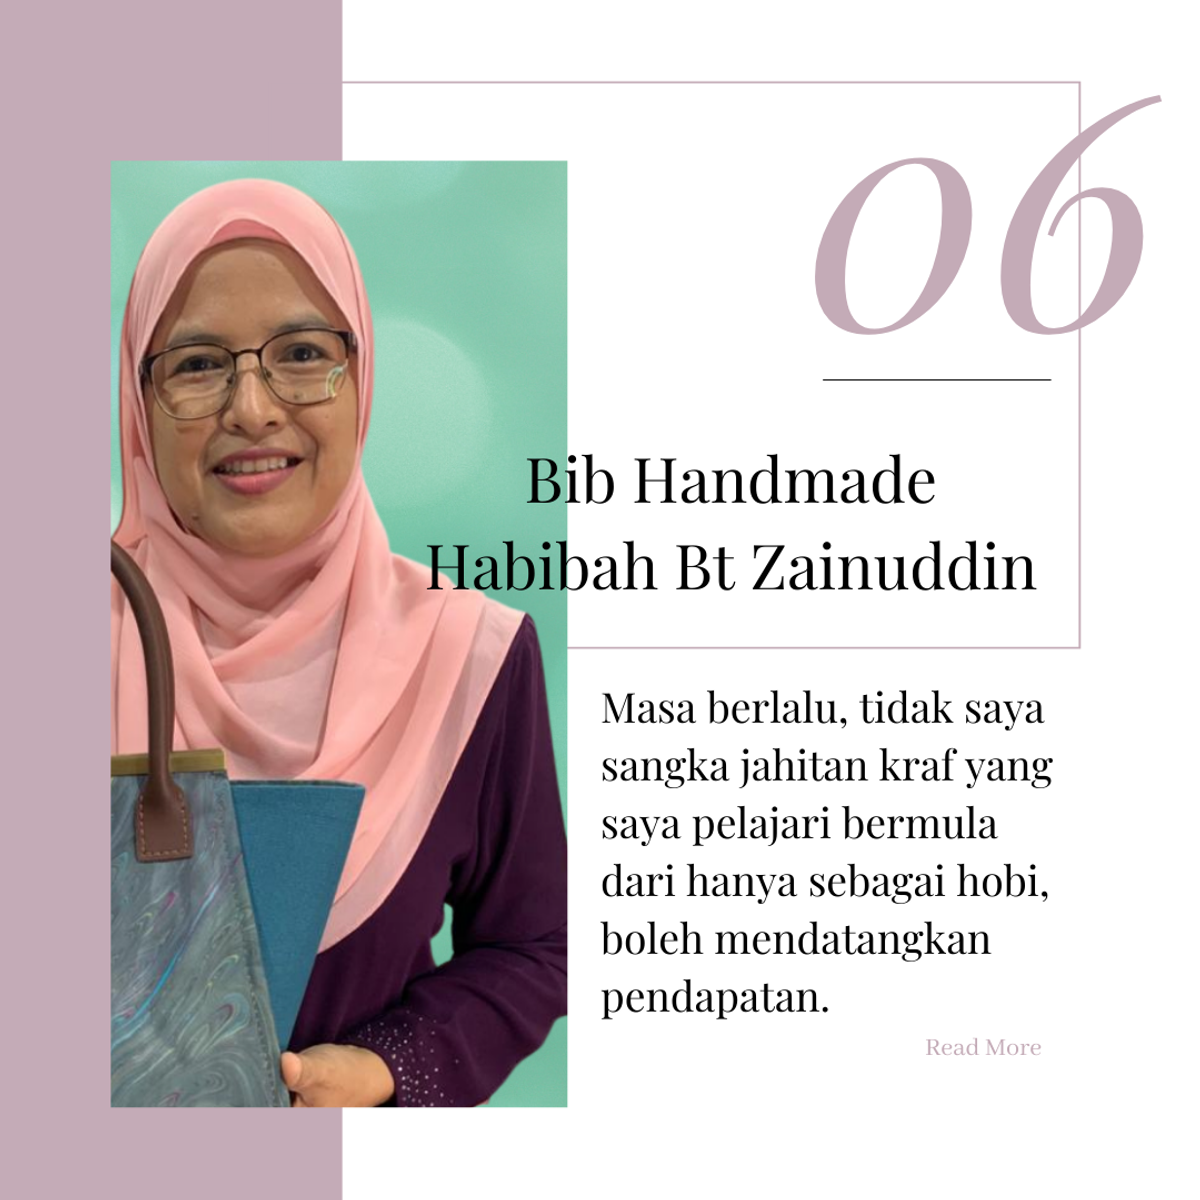 Pembuat Beg Tangan Malaysia - Bib Handmade/Habibah Bt Zainuddin